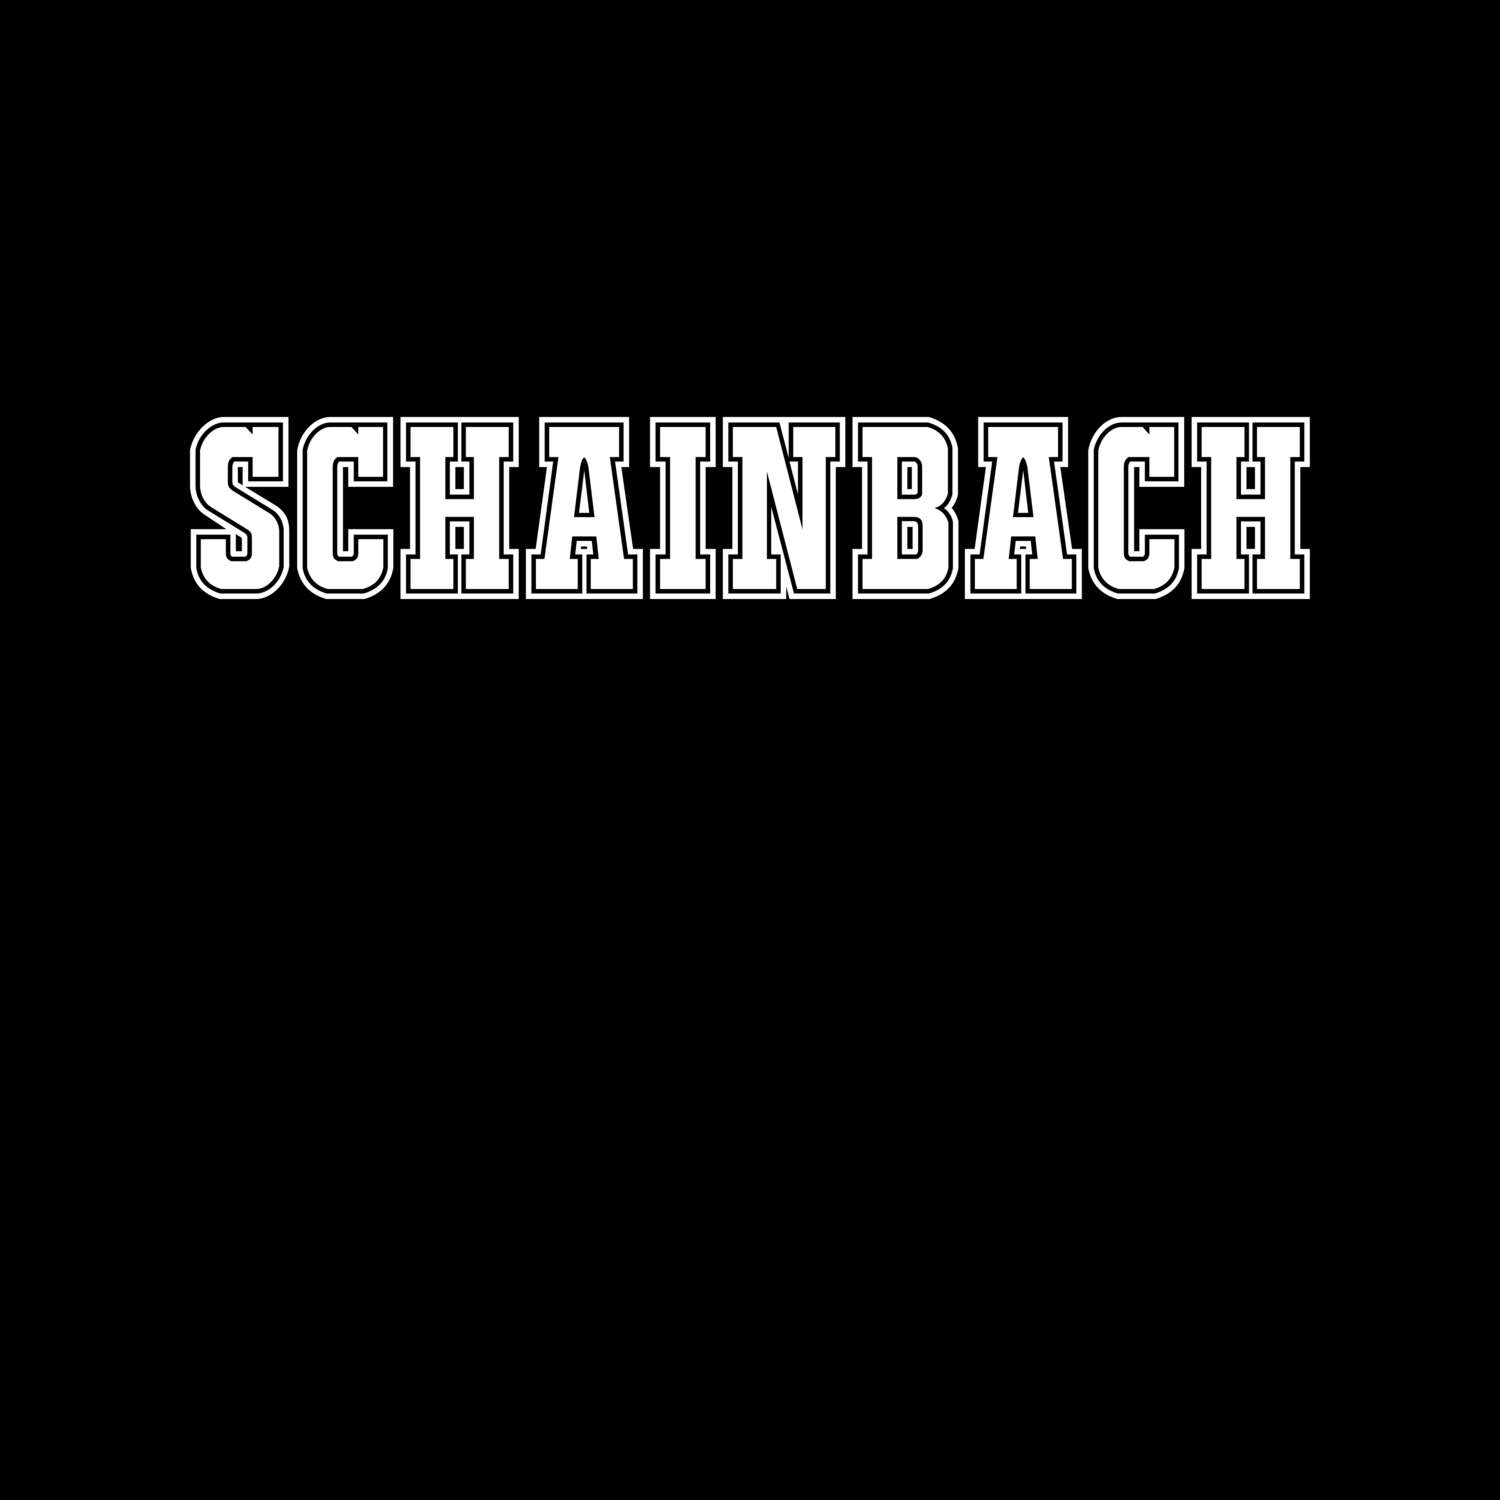 Schainbach T-Shirt »Classic«